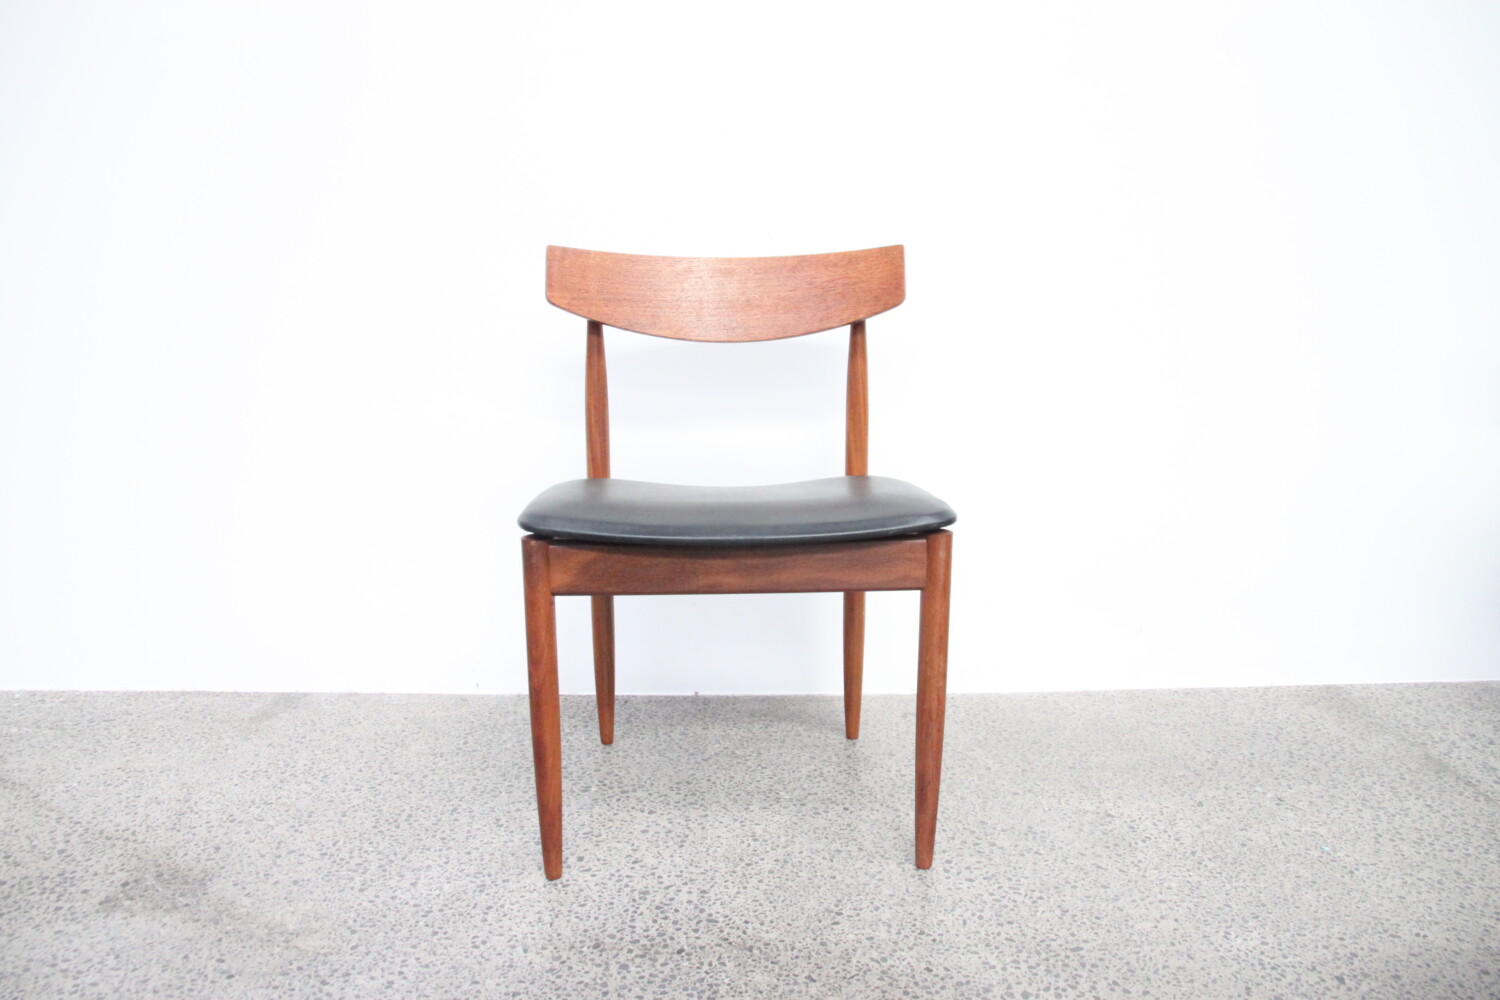 Teak Dining Chairs by Ib Kofod Larsen